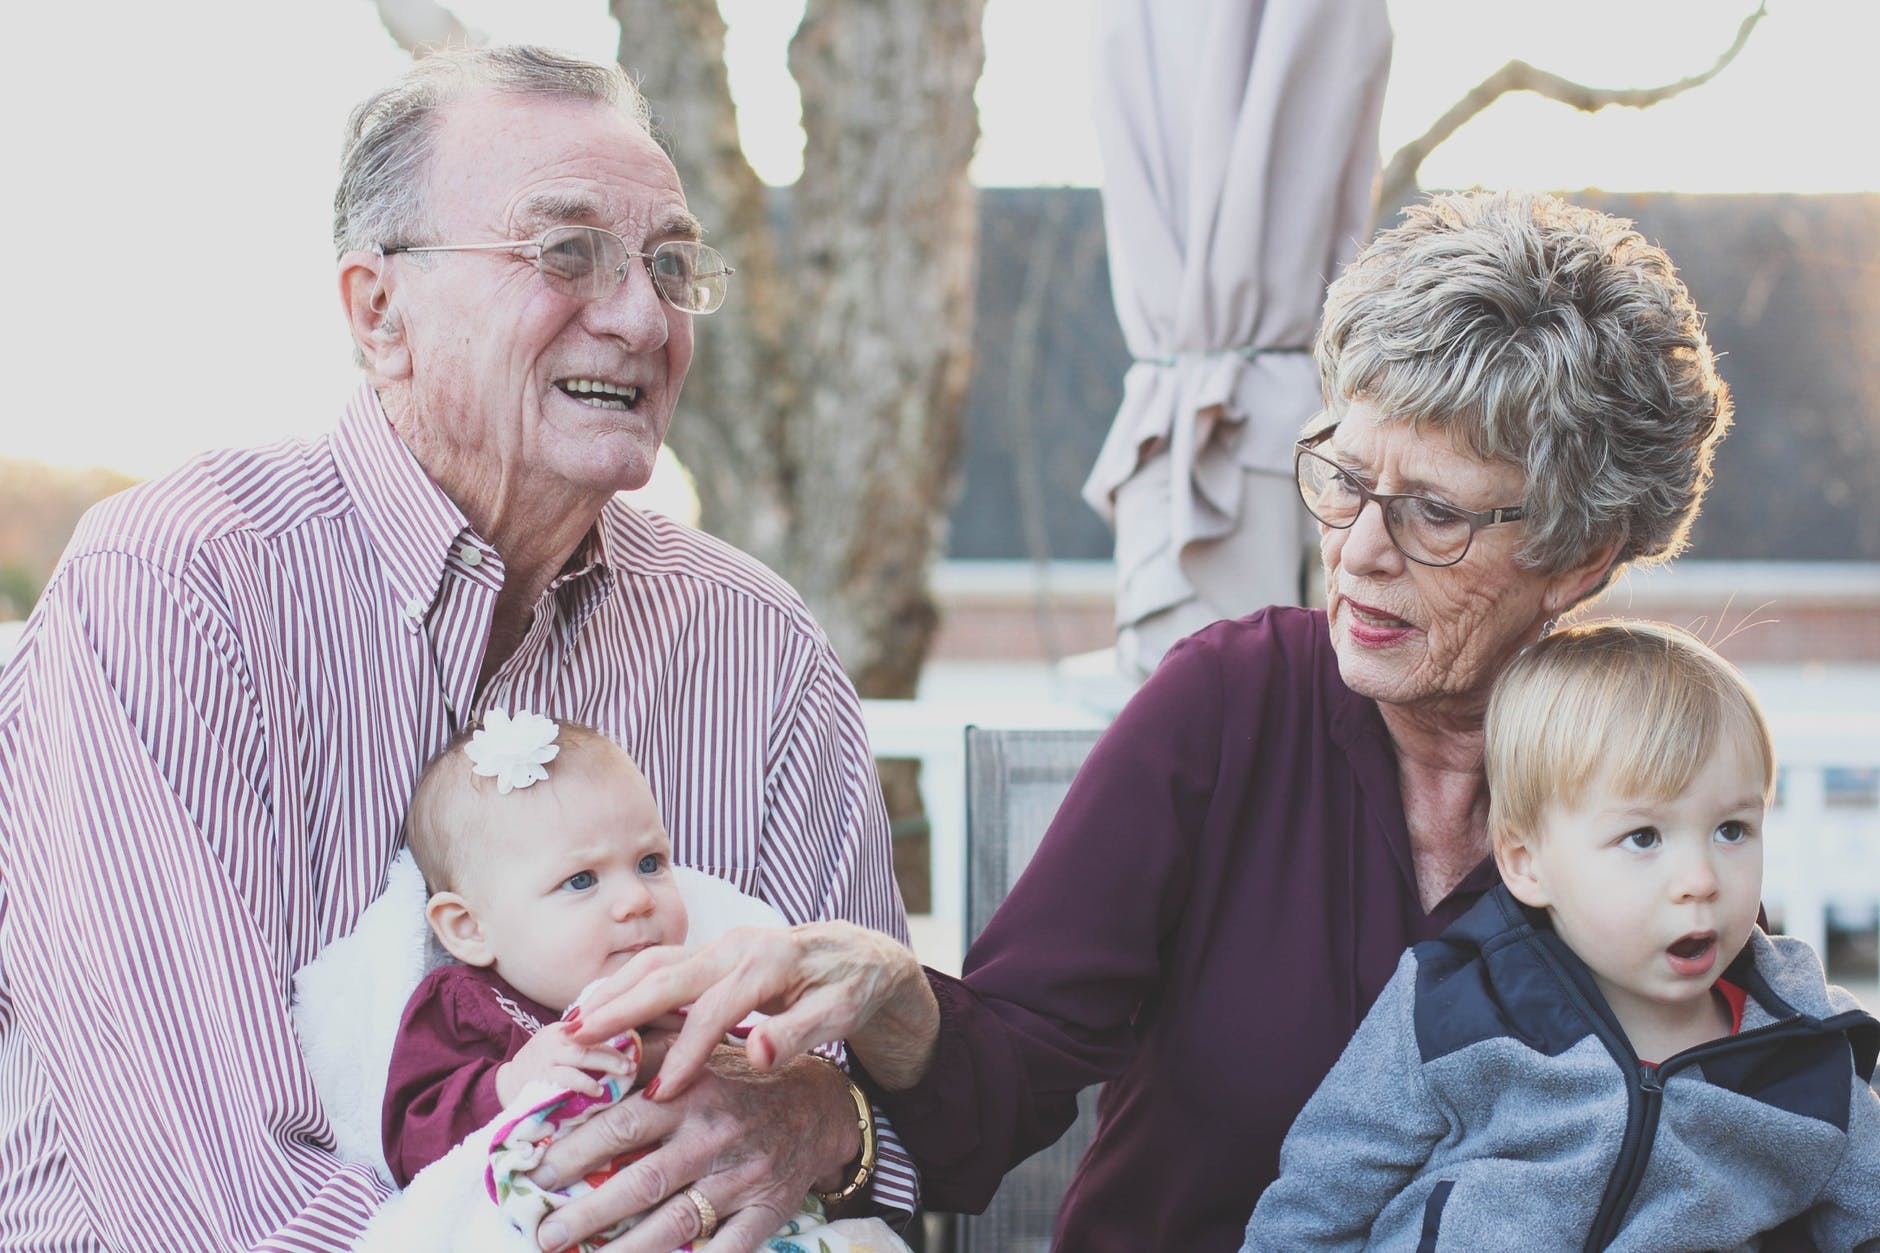 When Grandparenting is an unfair burden